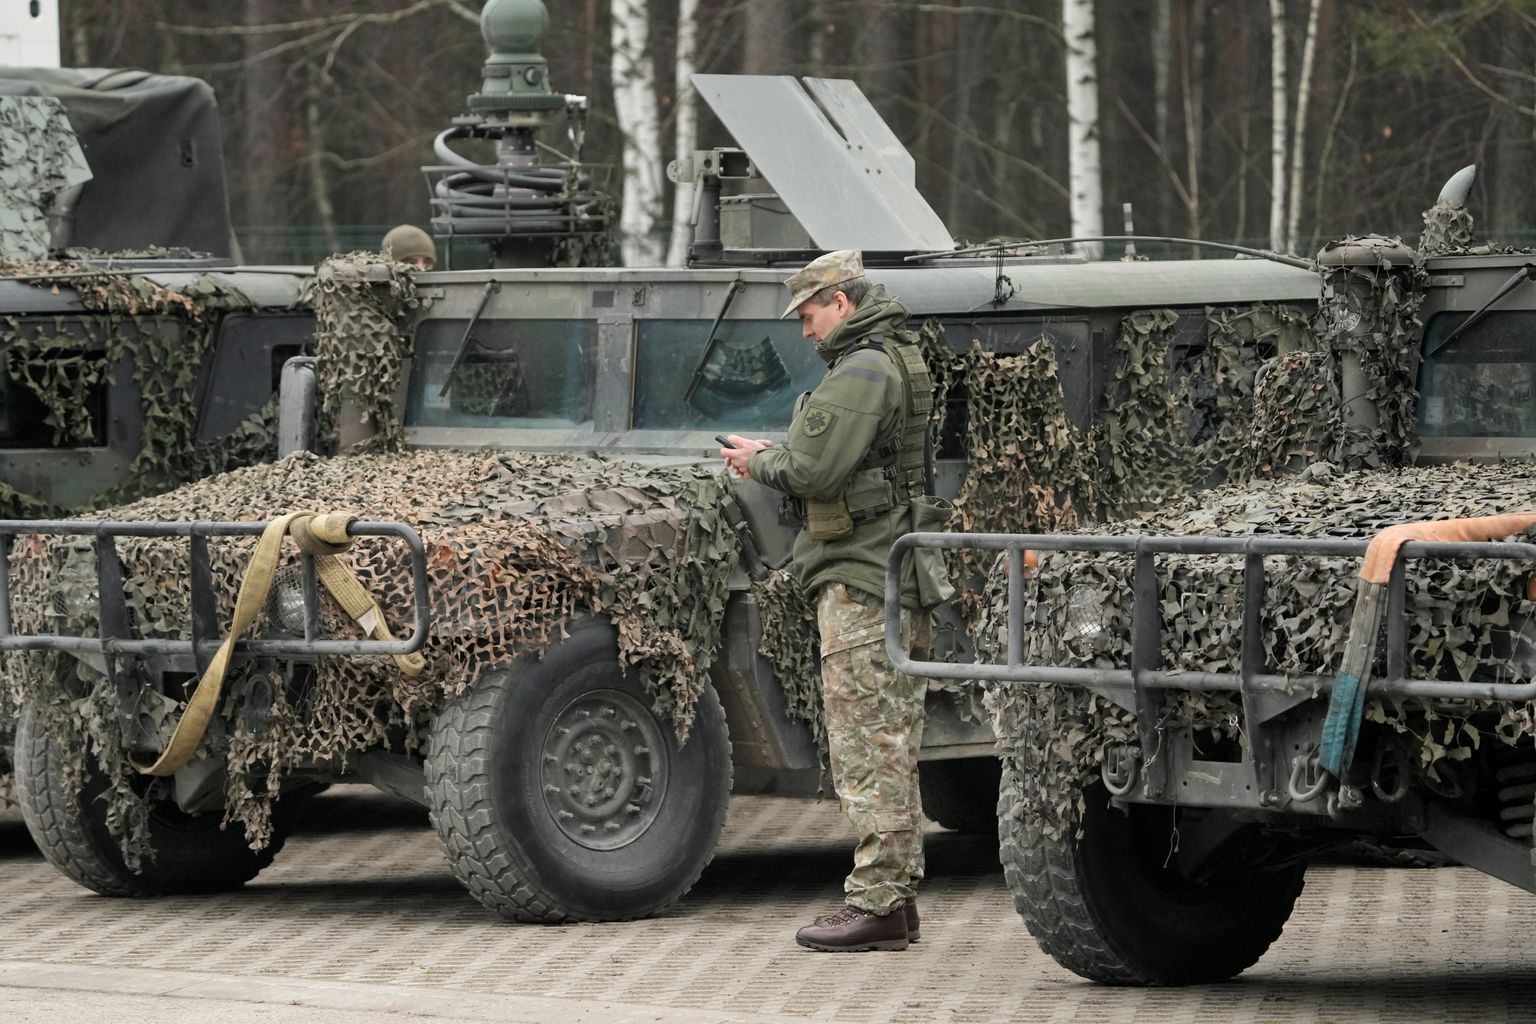 Leedu sõjaväelased sõjatehnikaga. Foto on illustratiivne.